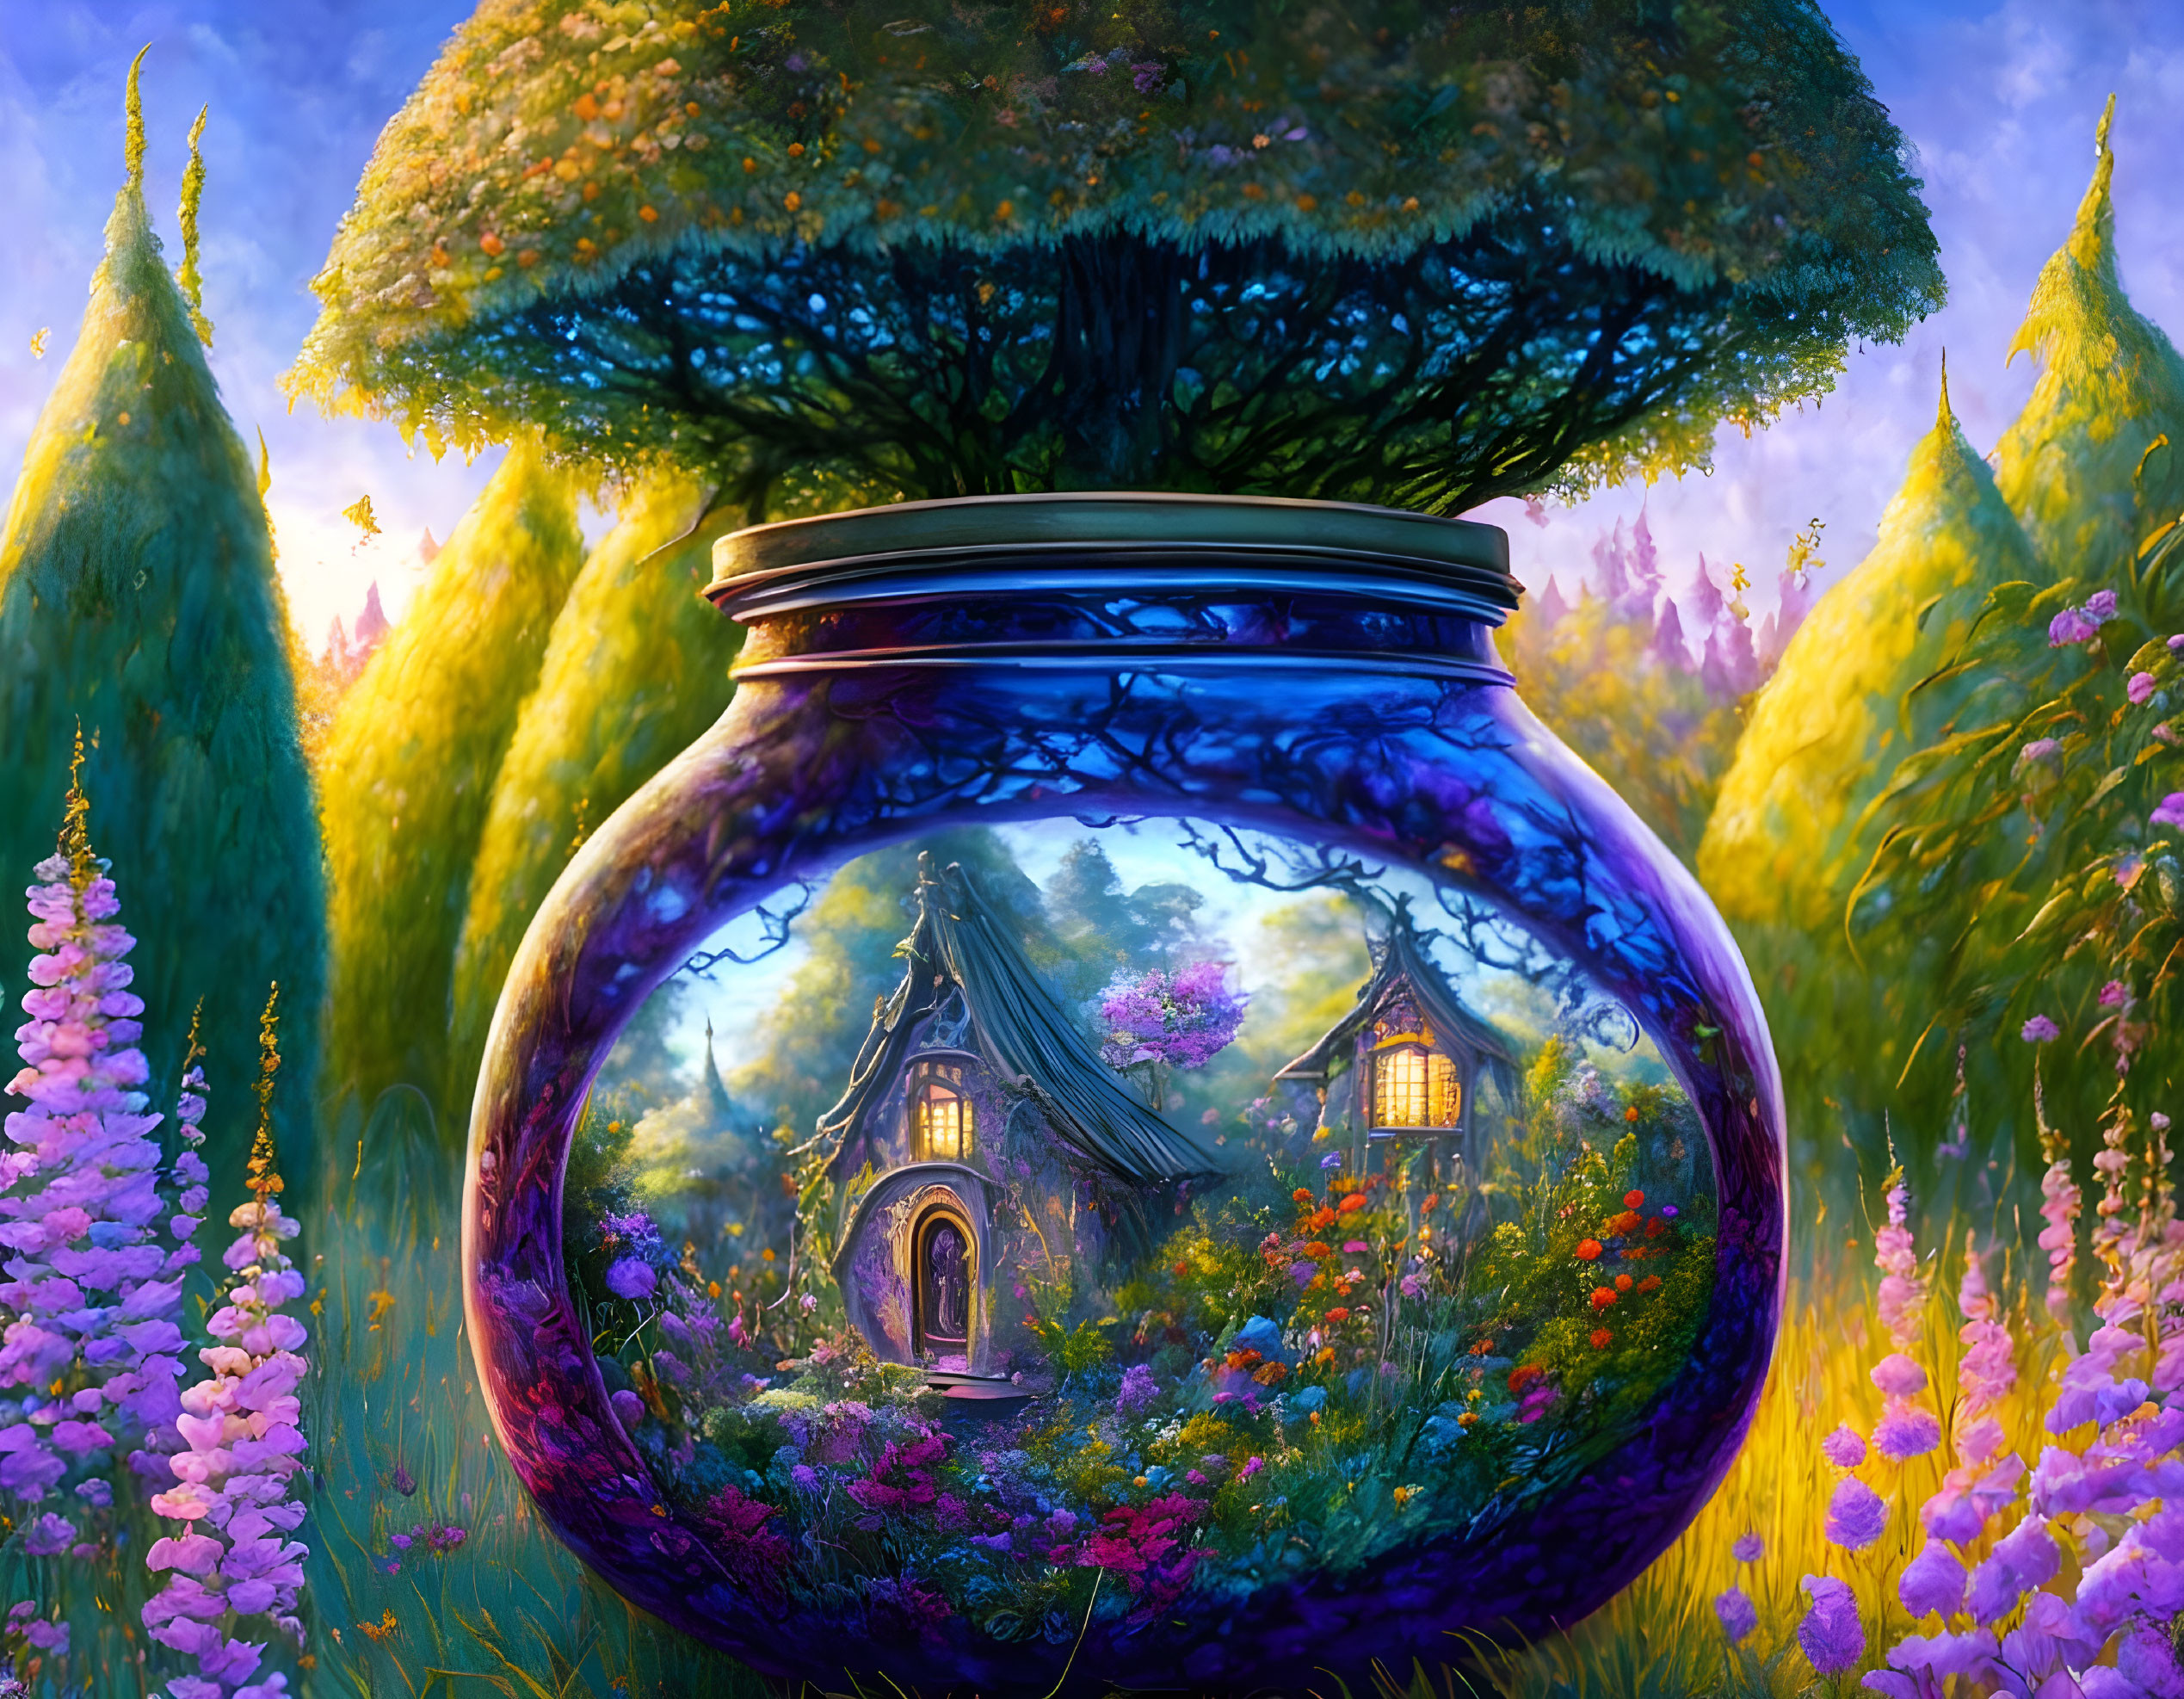 Beautiful garden inside a jar